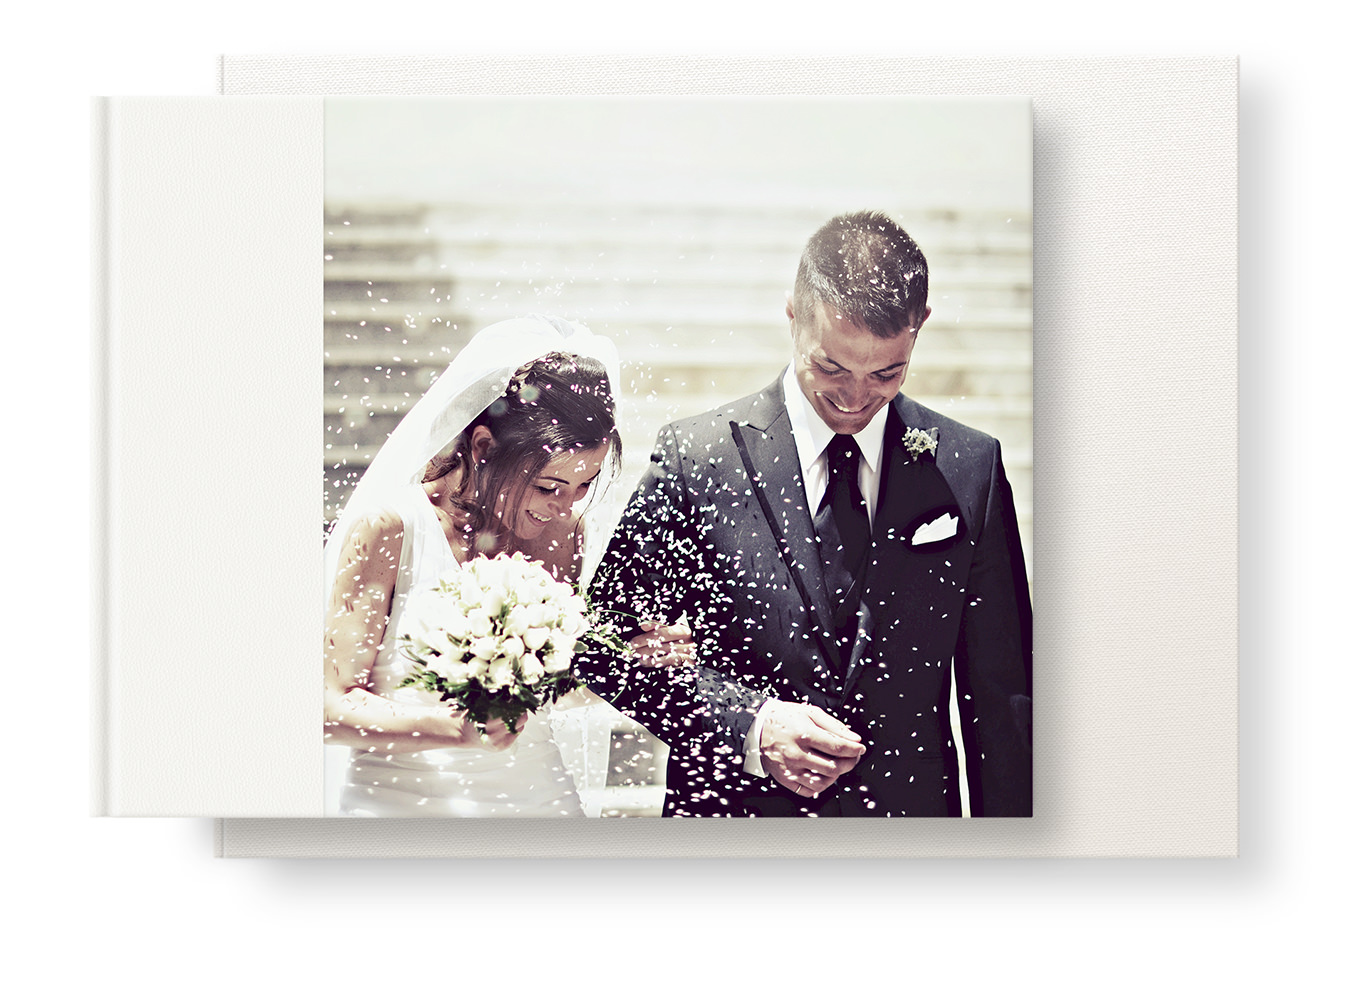 Noiva e noivo deixando a igreja em um banho de confete.